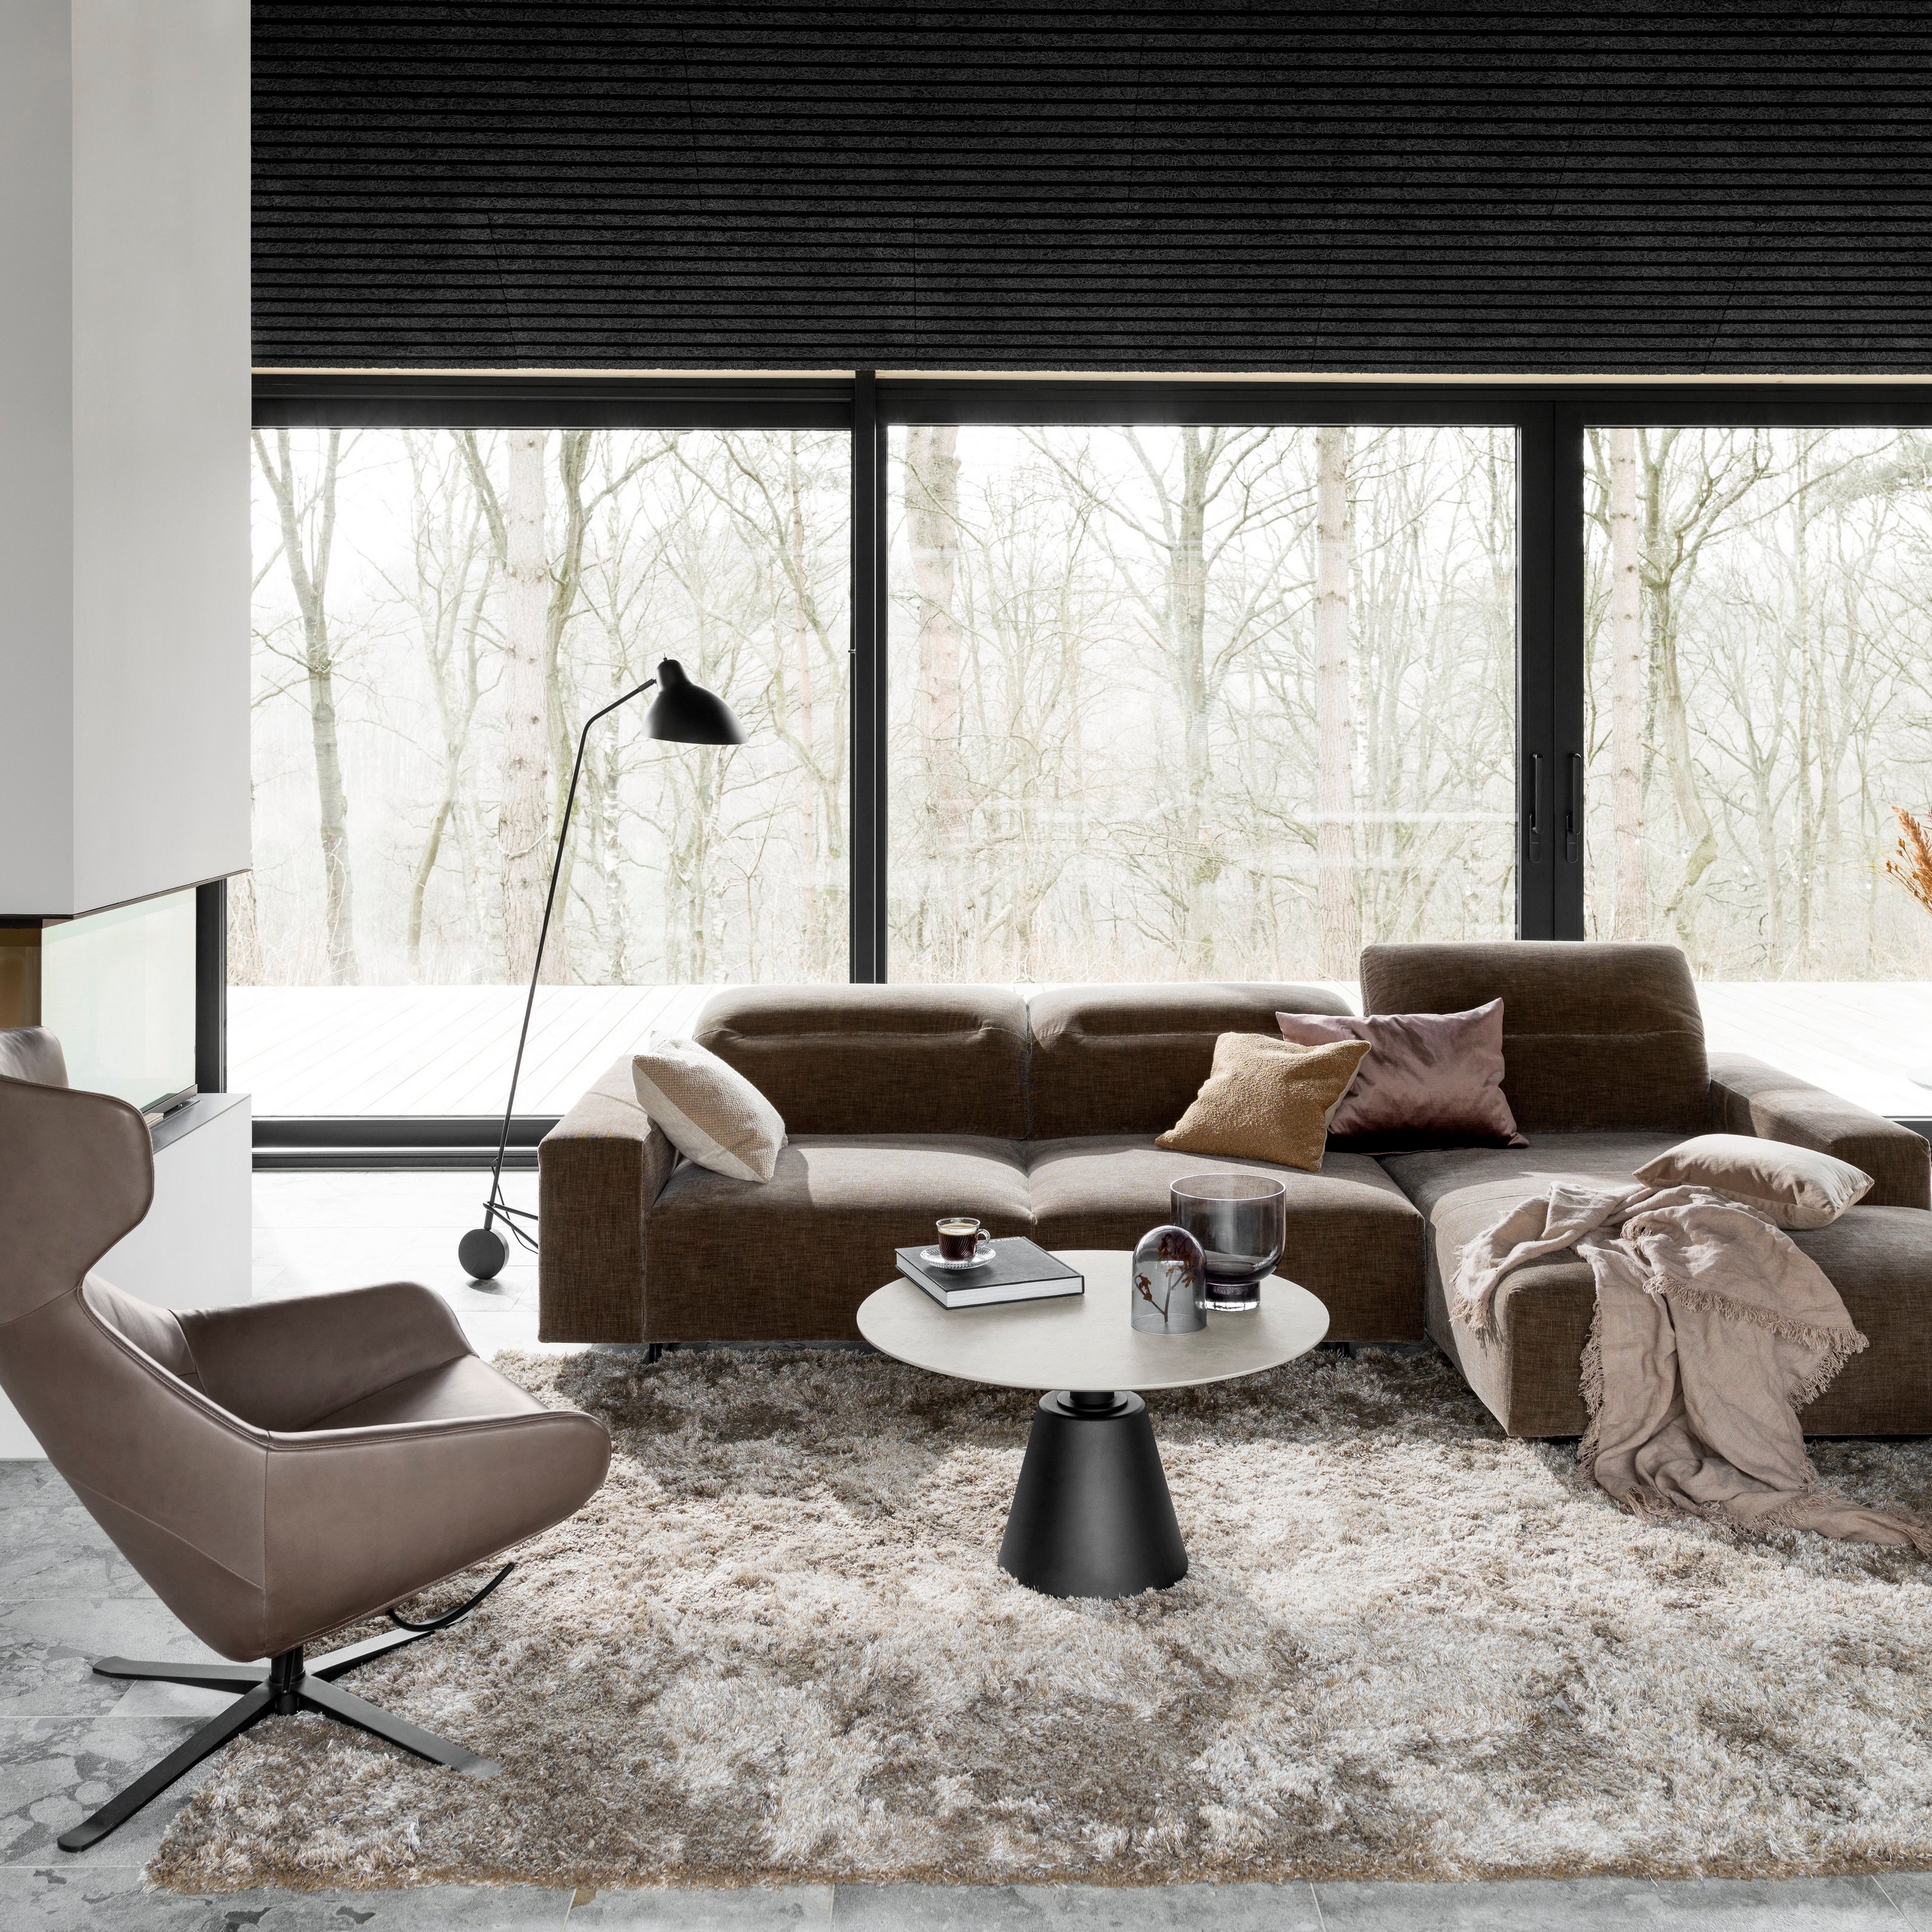 Nowoczesny pokój dzienny z brązową sofą modułową, szarym dywanem i czarną lampą podłogową ustawioną przy oknie.